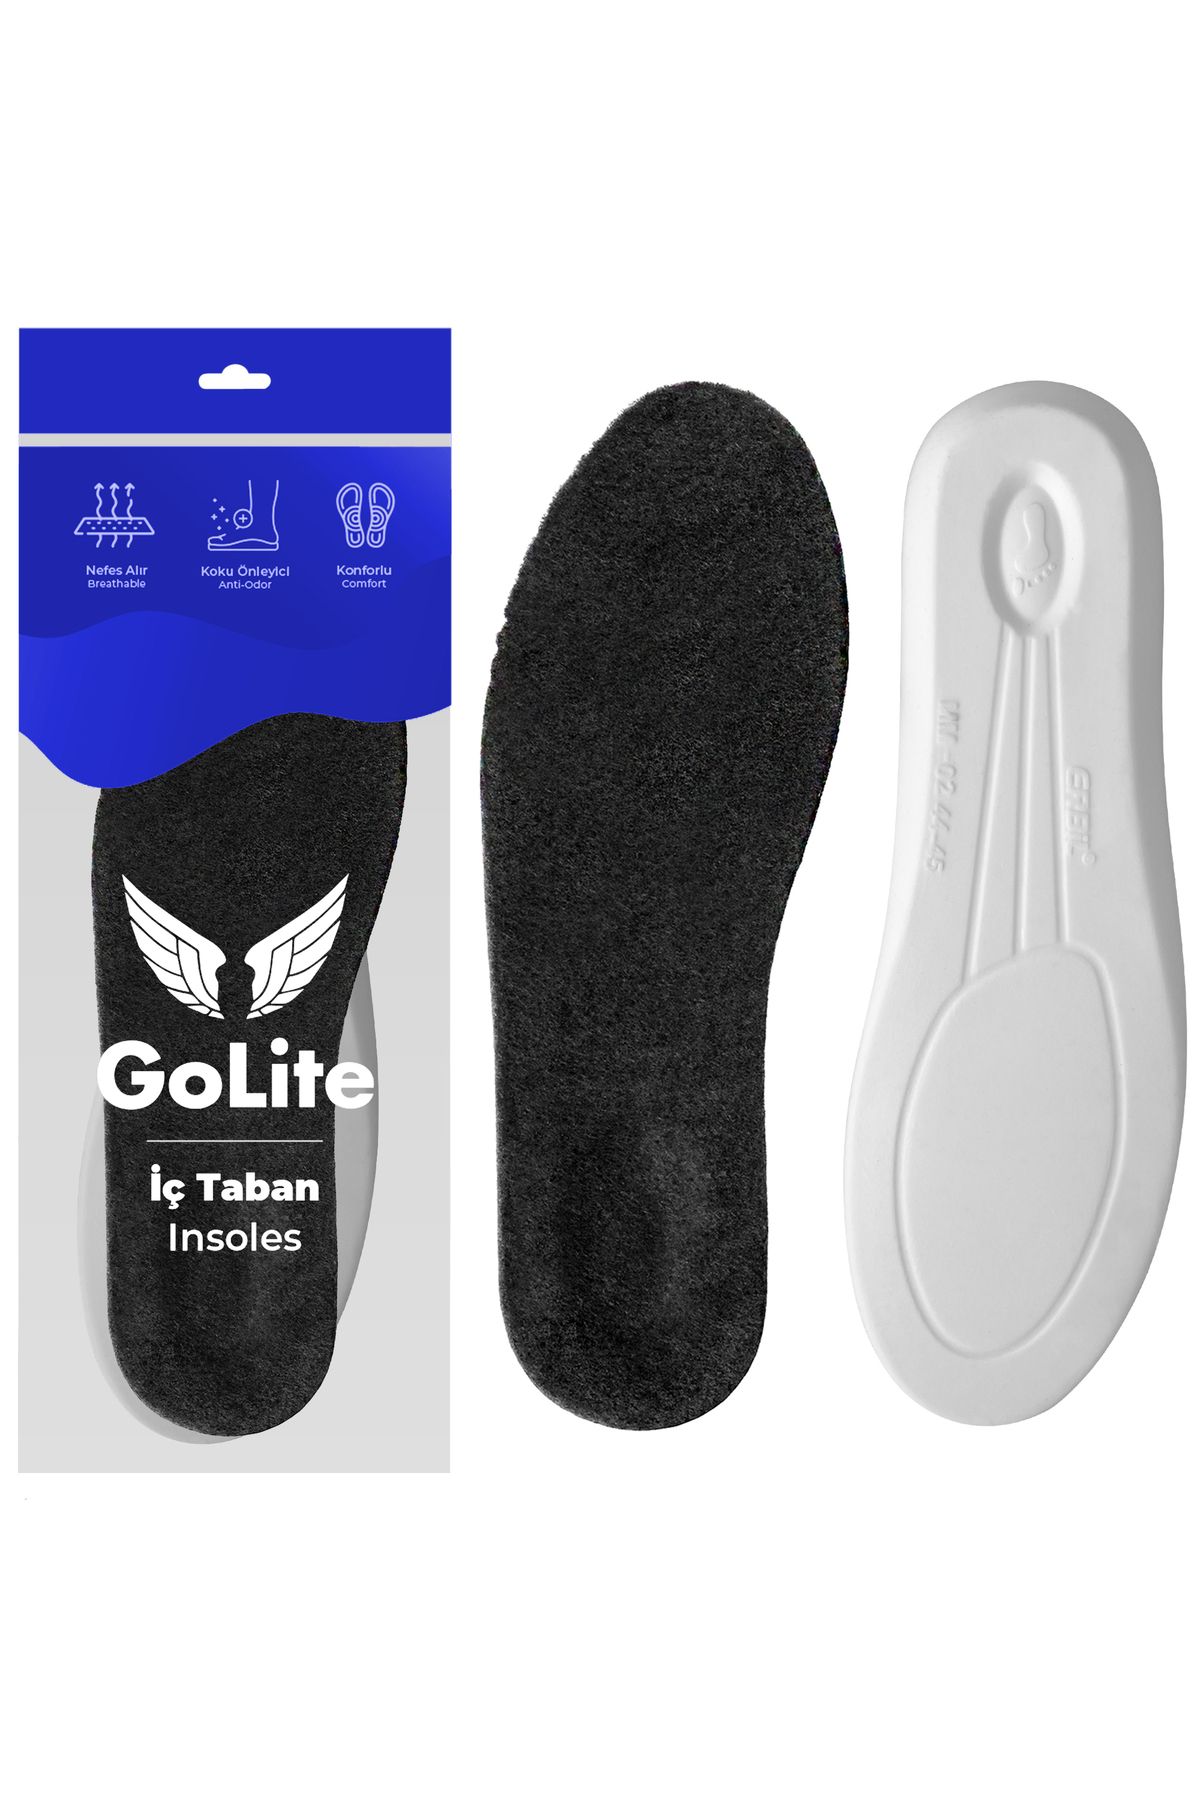 GoLite Kışlık Sıcak Tutan Tabanlık, Yün Keçe Ayakkabı Iç Tabanı, Askerler Ve Polislere Kış Tabanlığı - Yk